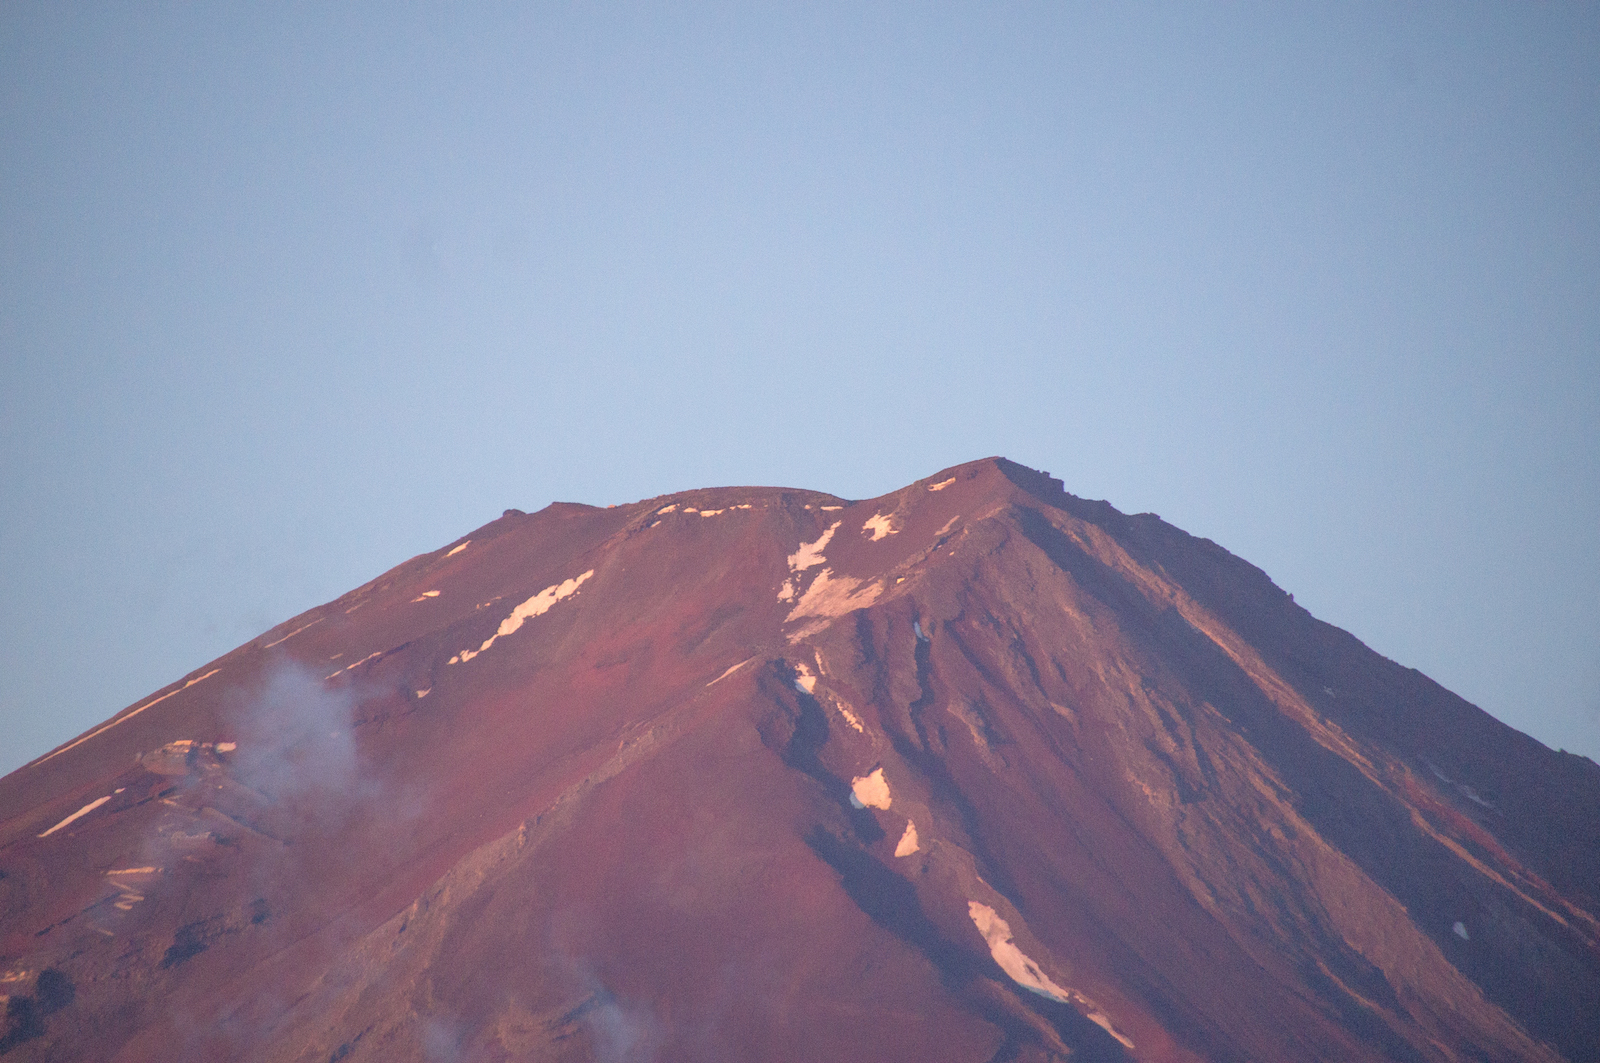 Spitz von Mt. Fuji